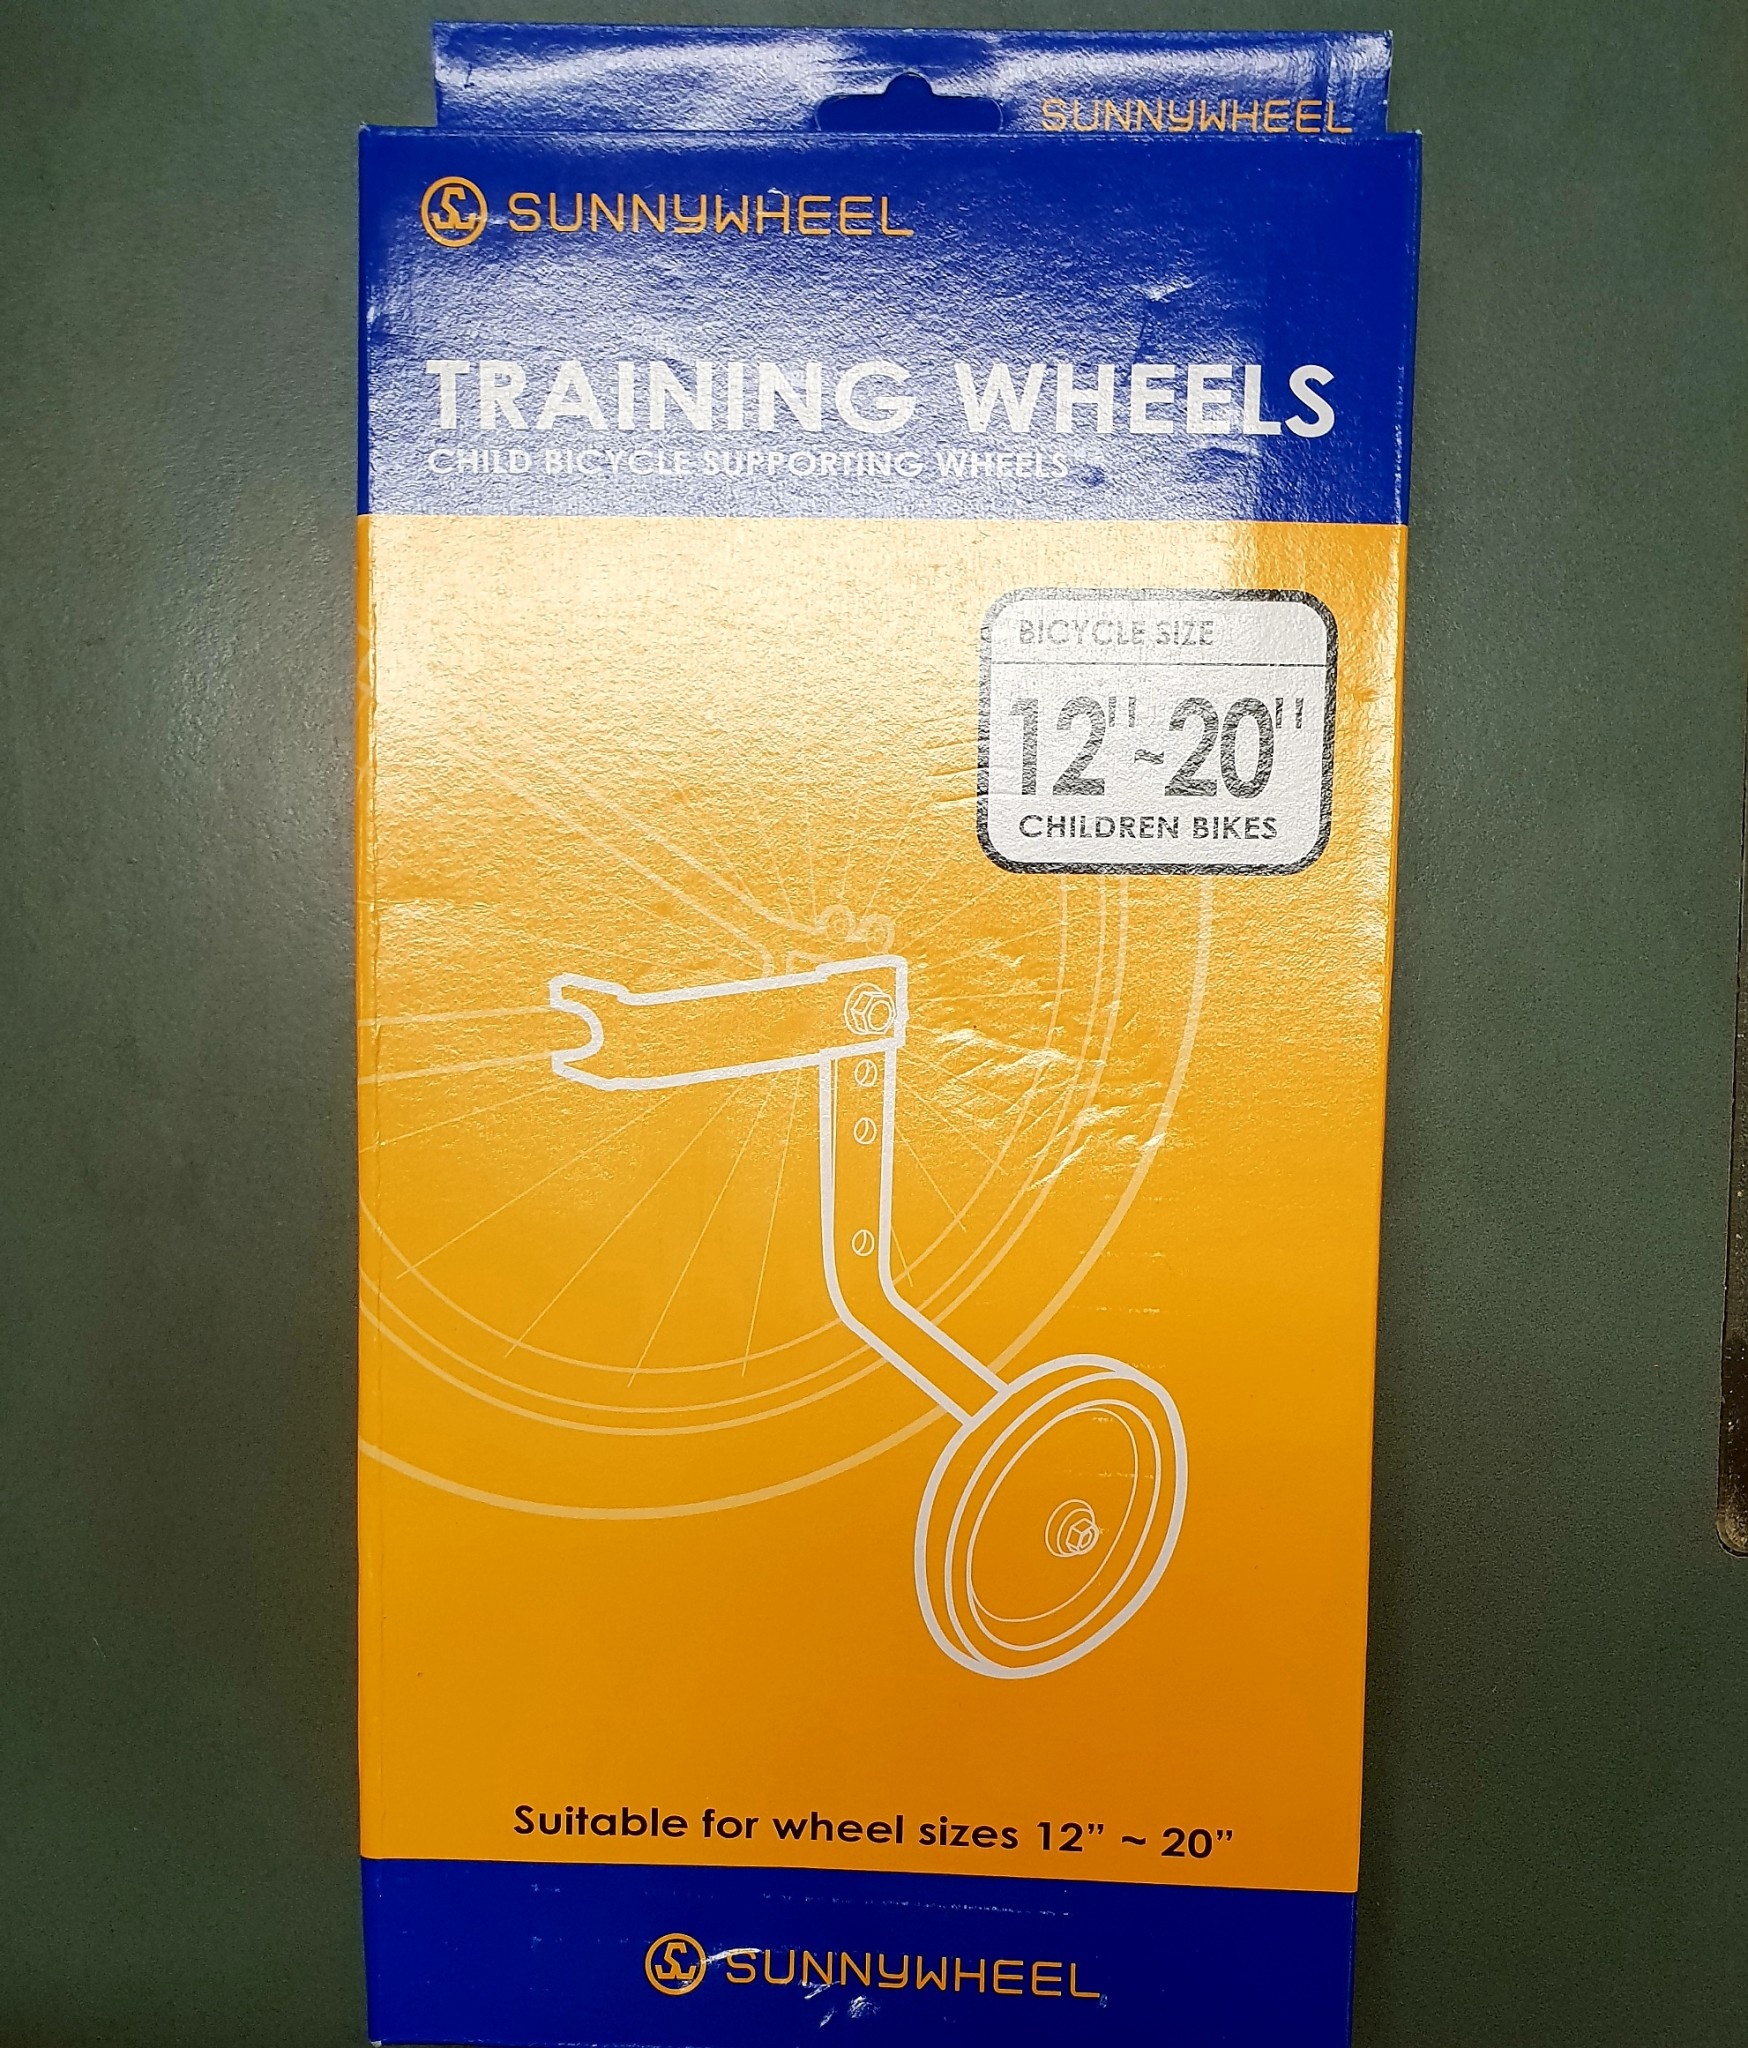 training wheels sizes